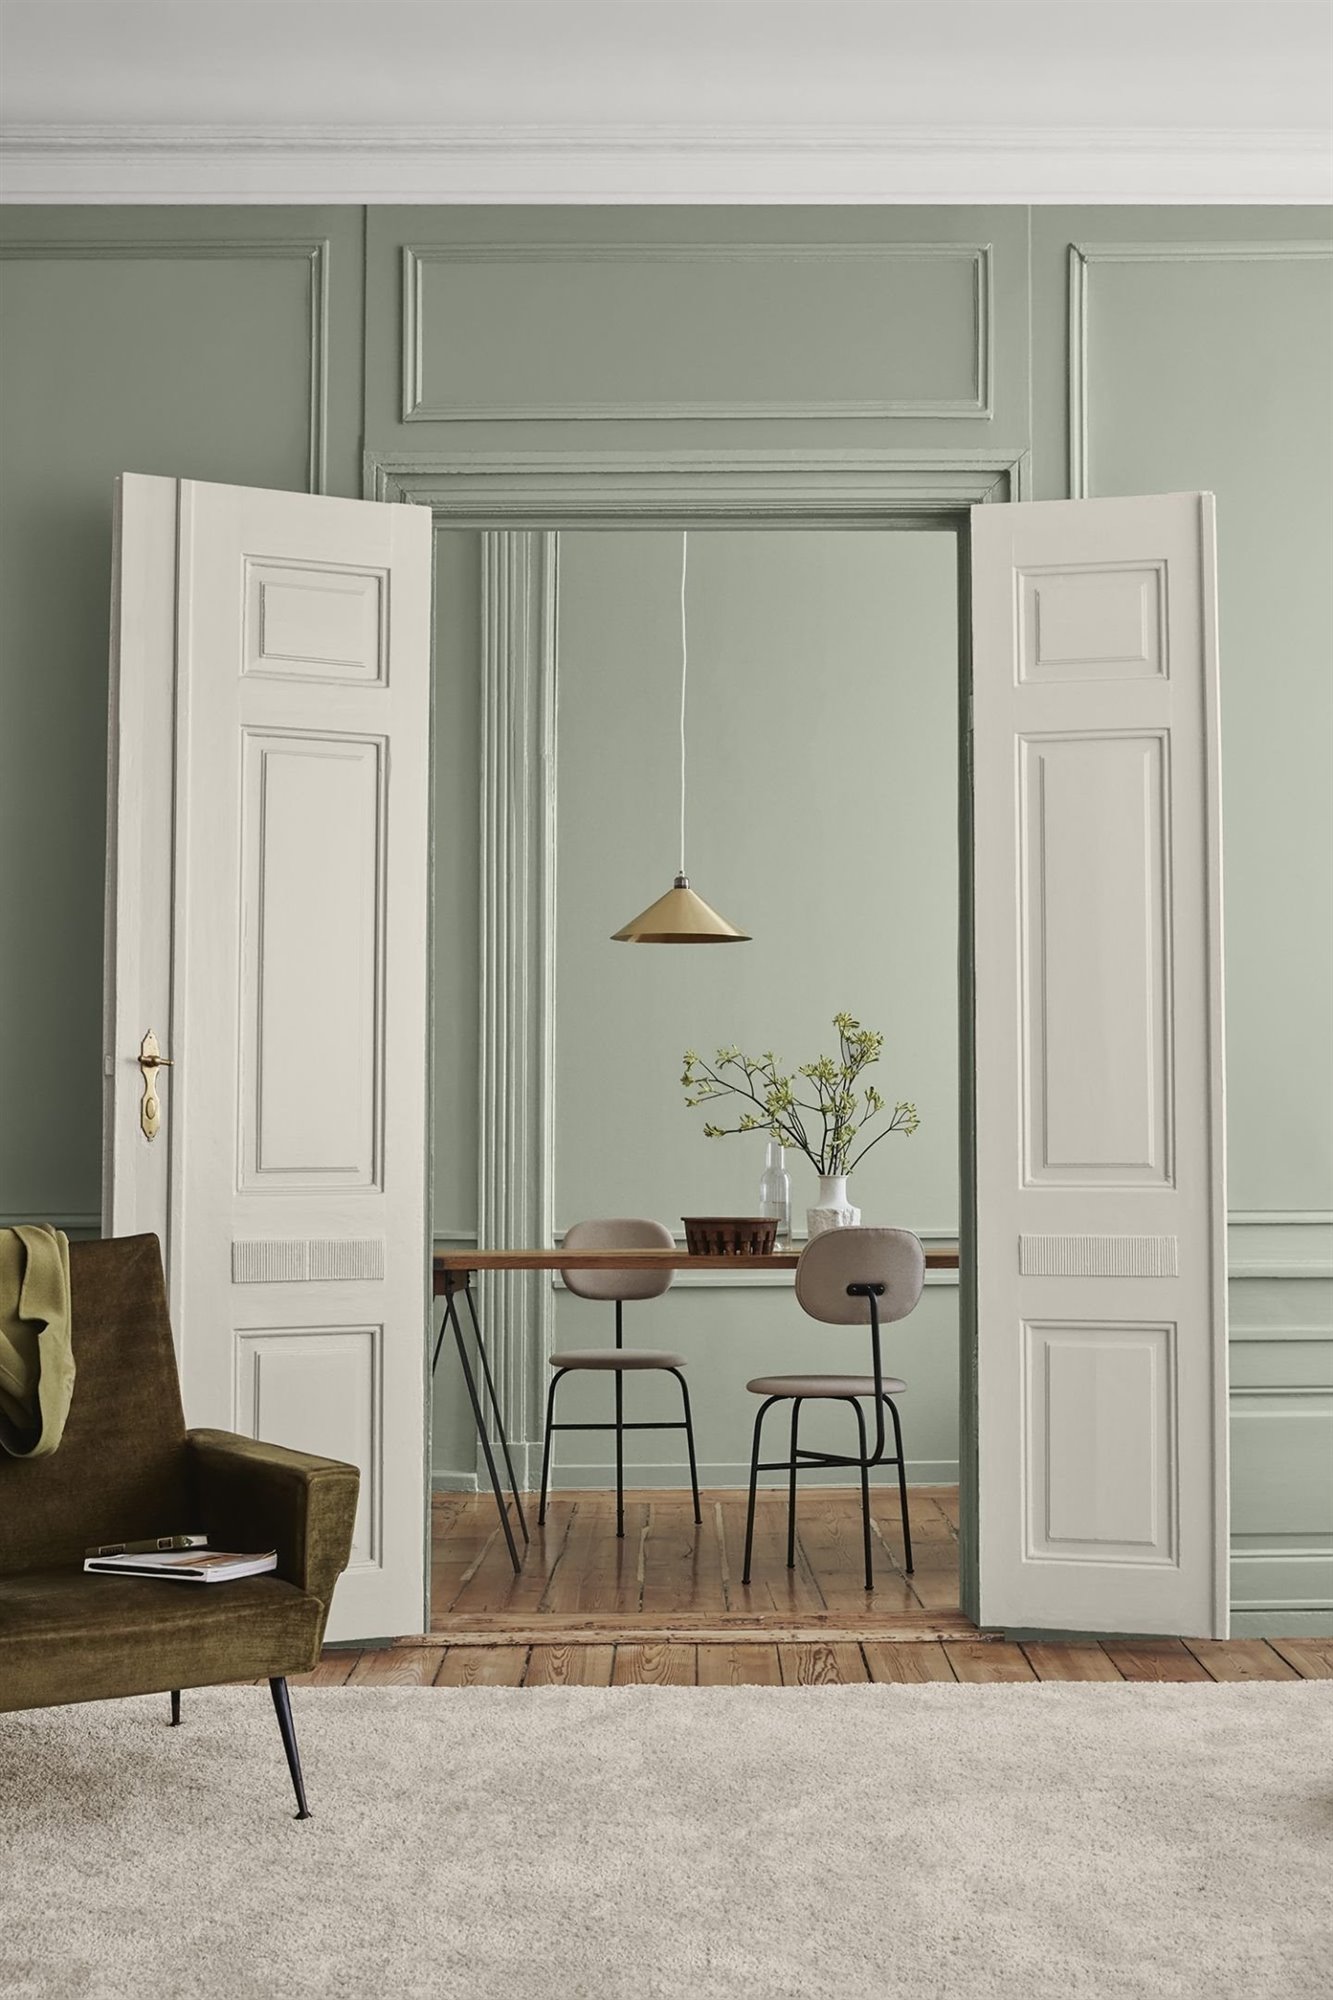 Salon con puertas pintadas a la tiza chalkpaint en color blanco. Como juego